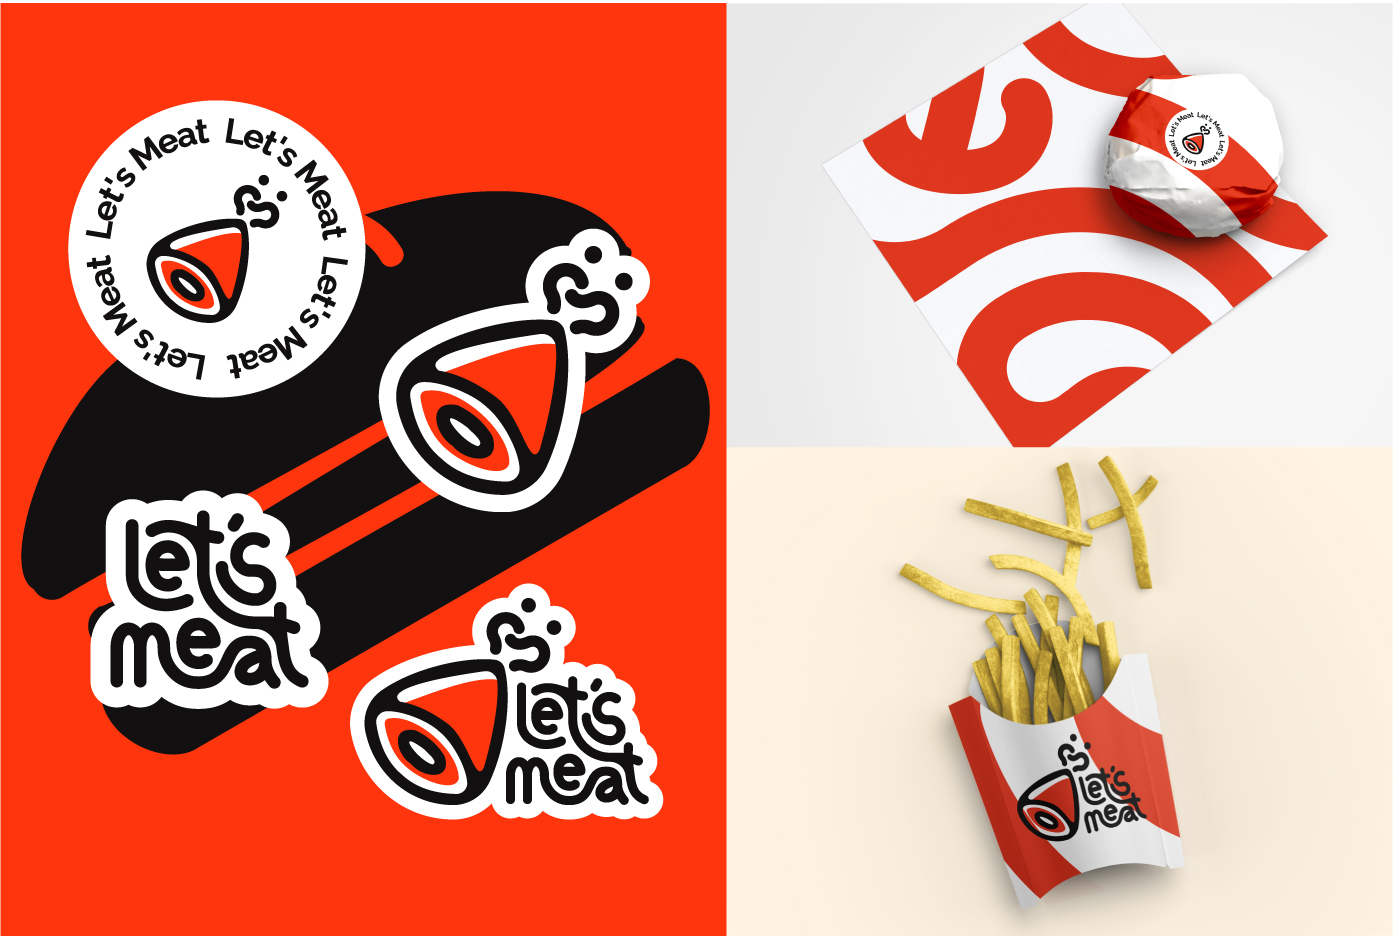 Meat Logos - 181+ Best Meat Logo Ideas. Free Meat Logo Maker. | 99designs